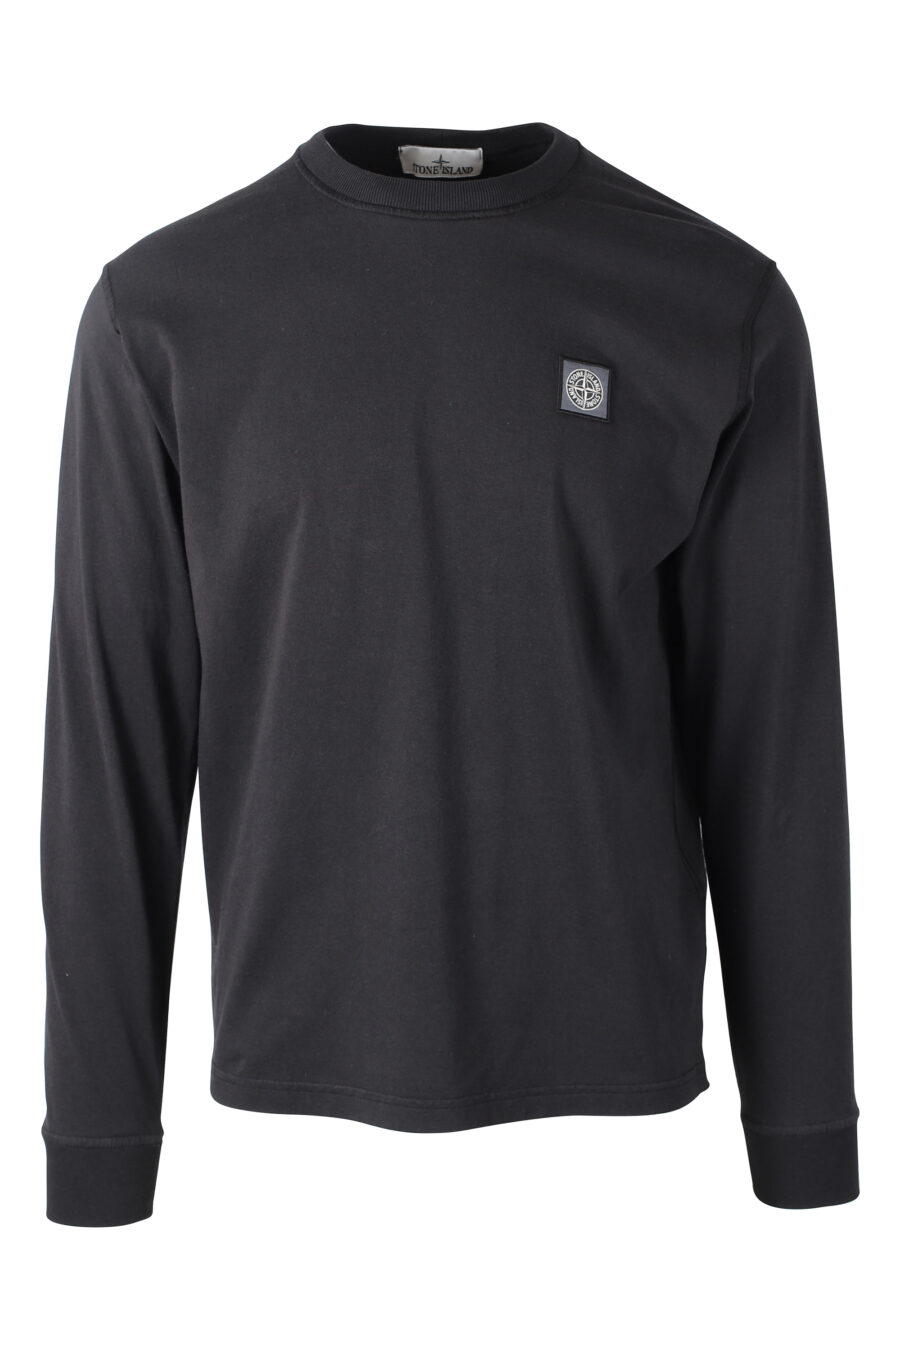 Camiseta manga larga negra con logo parche - IMG 8373